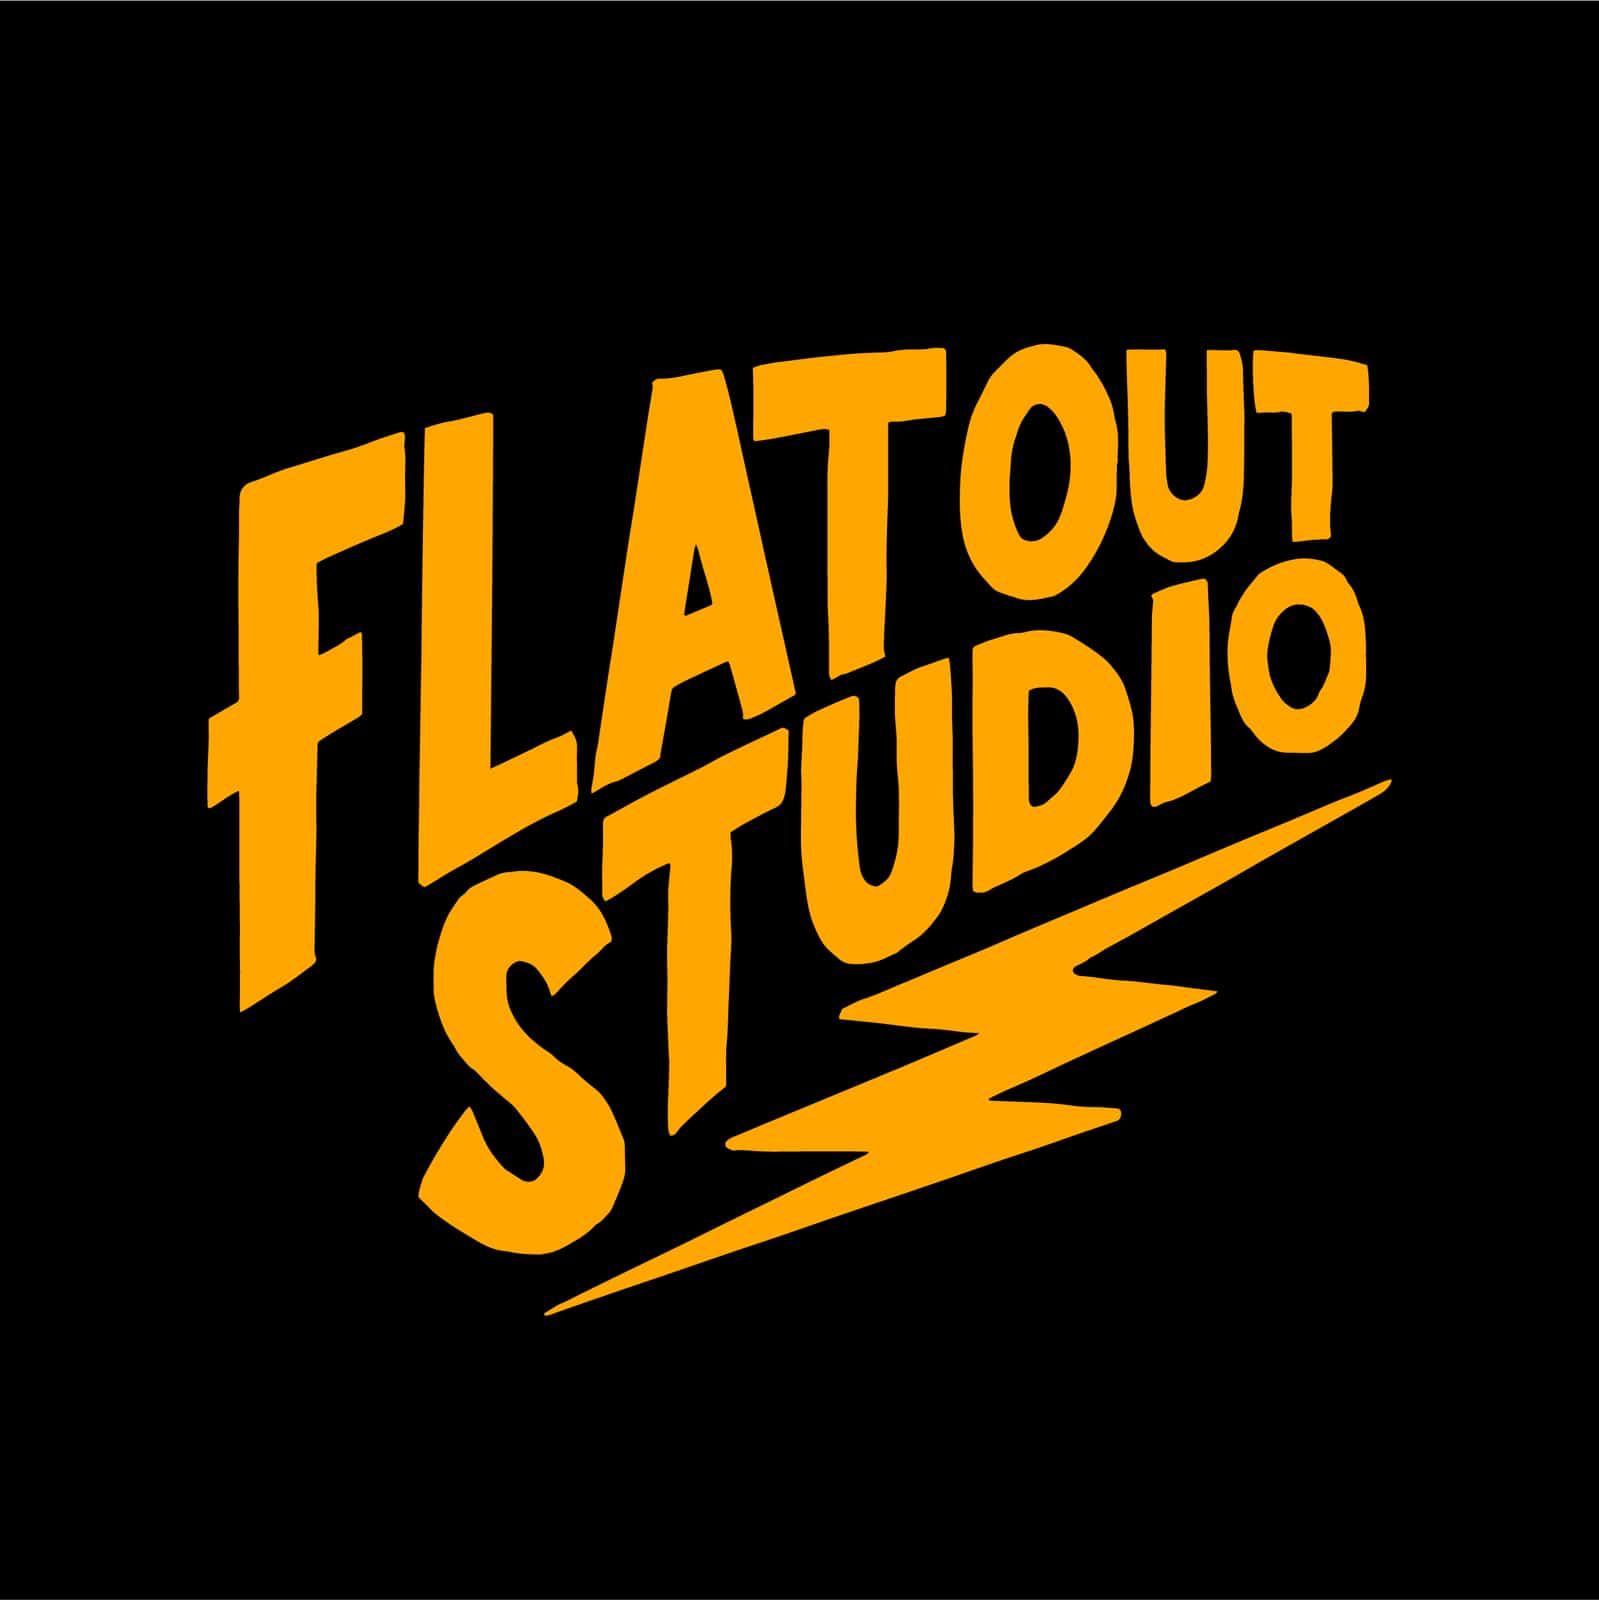 Logo Flat Out Studio shop